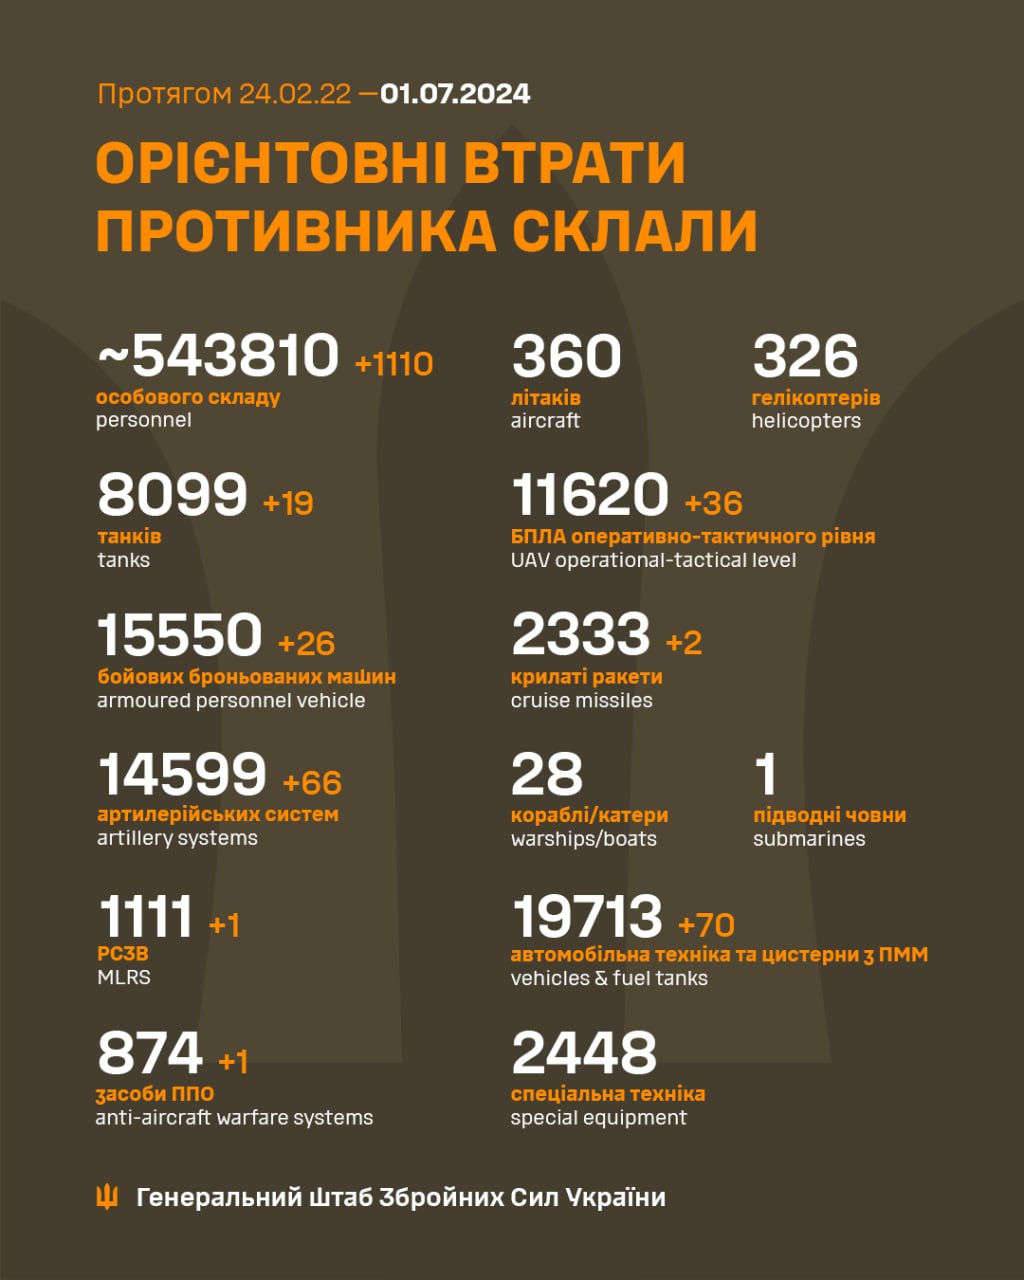 Ще 1110 загарбників і 66 артсистем. Генштаб оновив втрати РФ в Україні